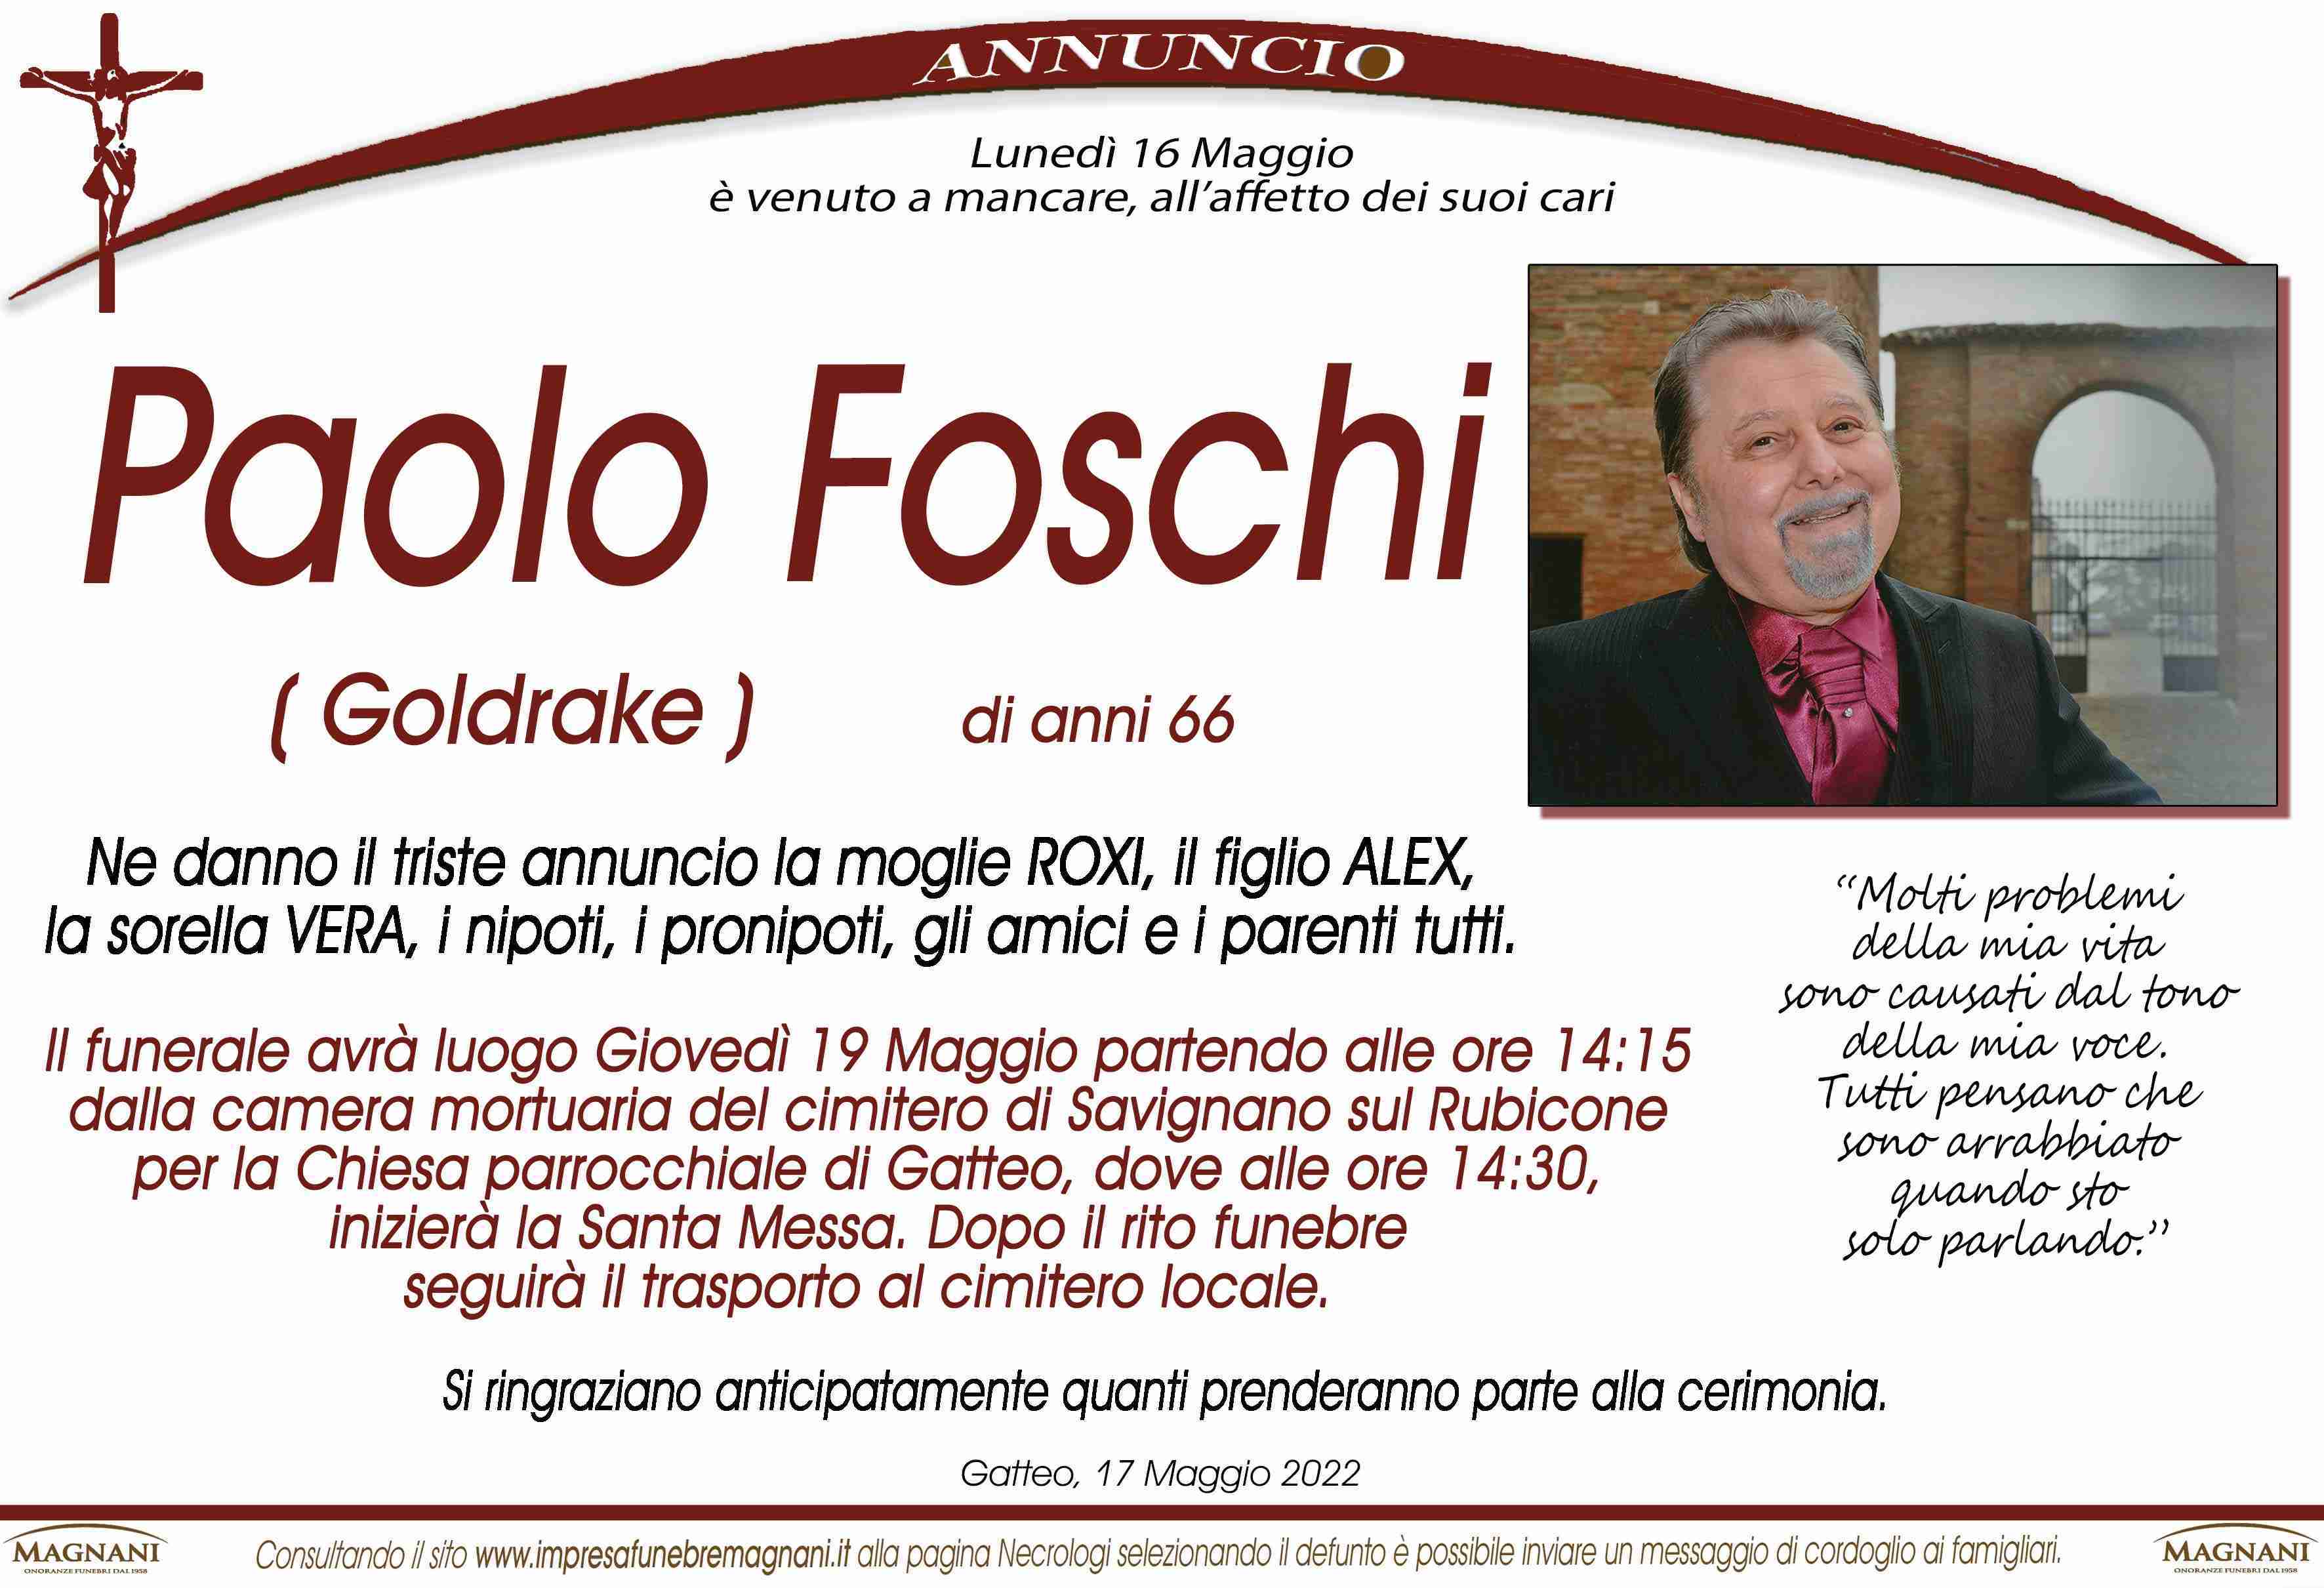 Paolo Foschi